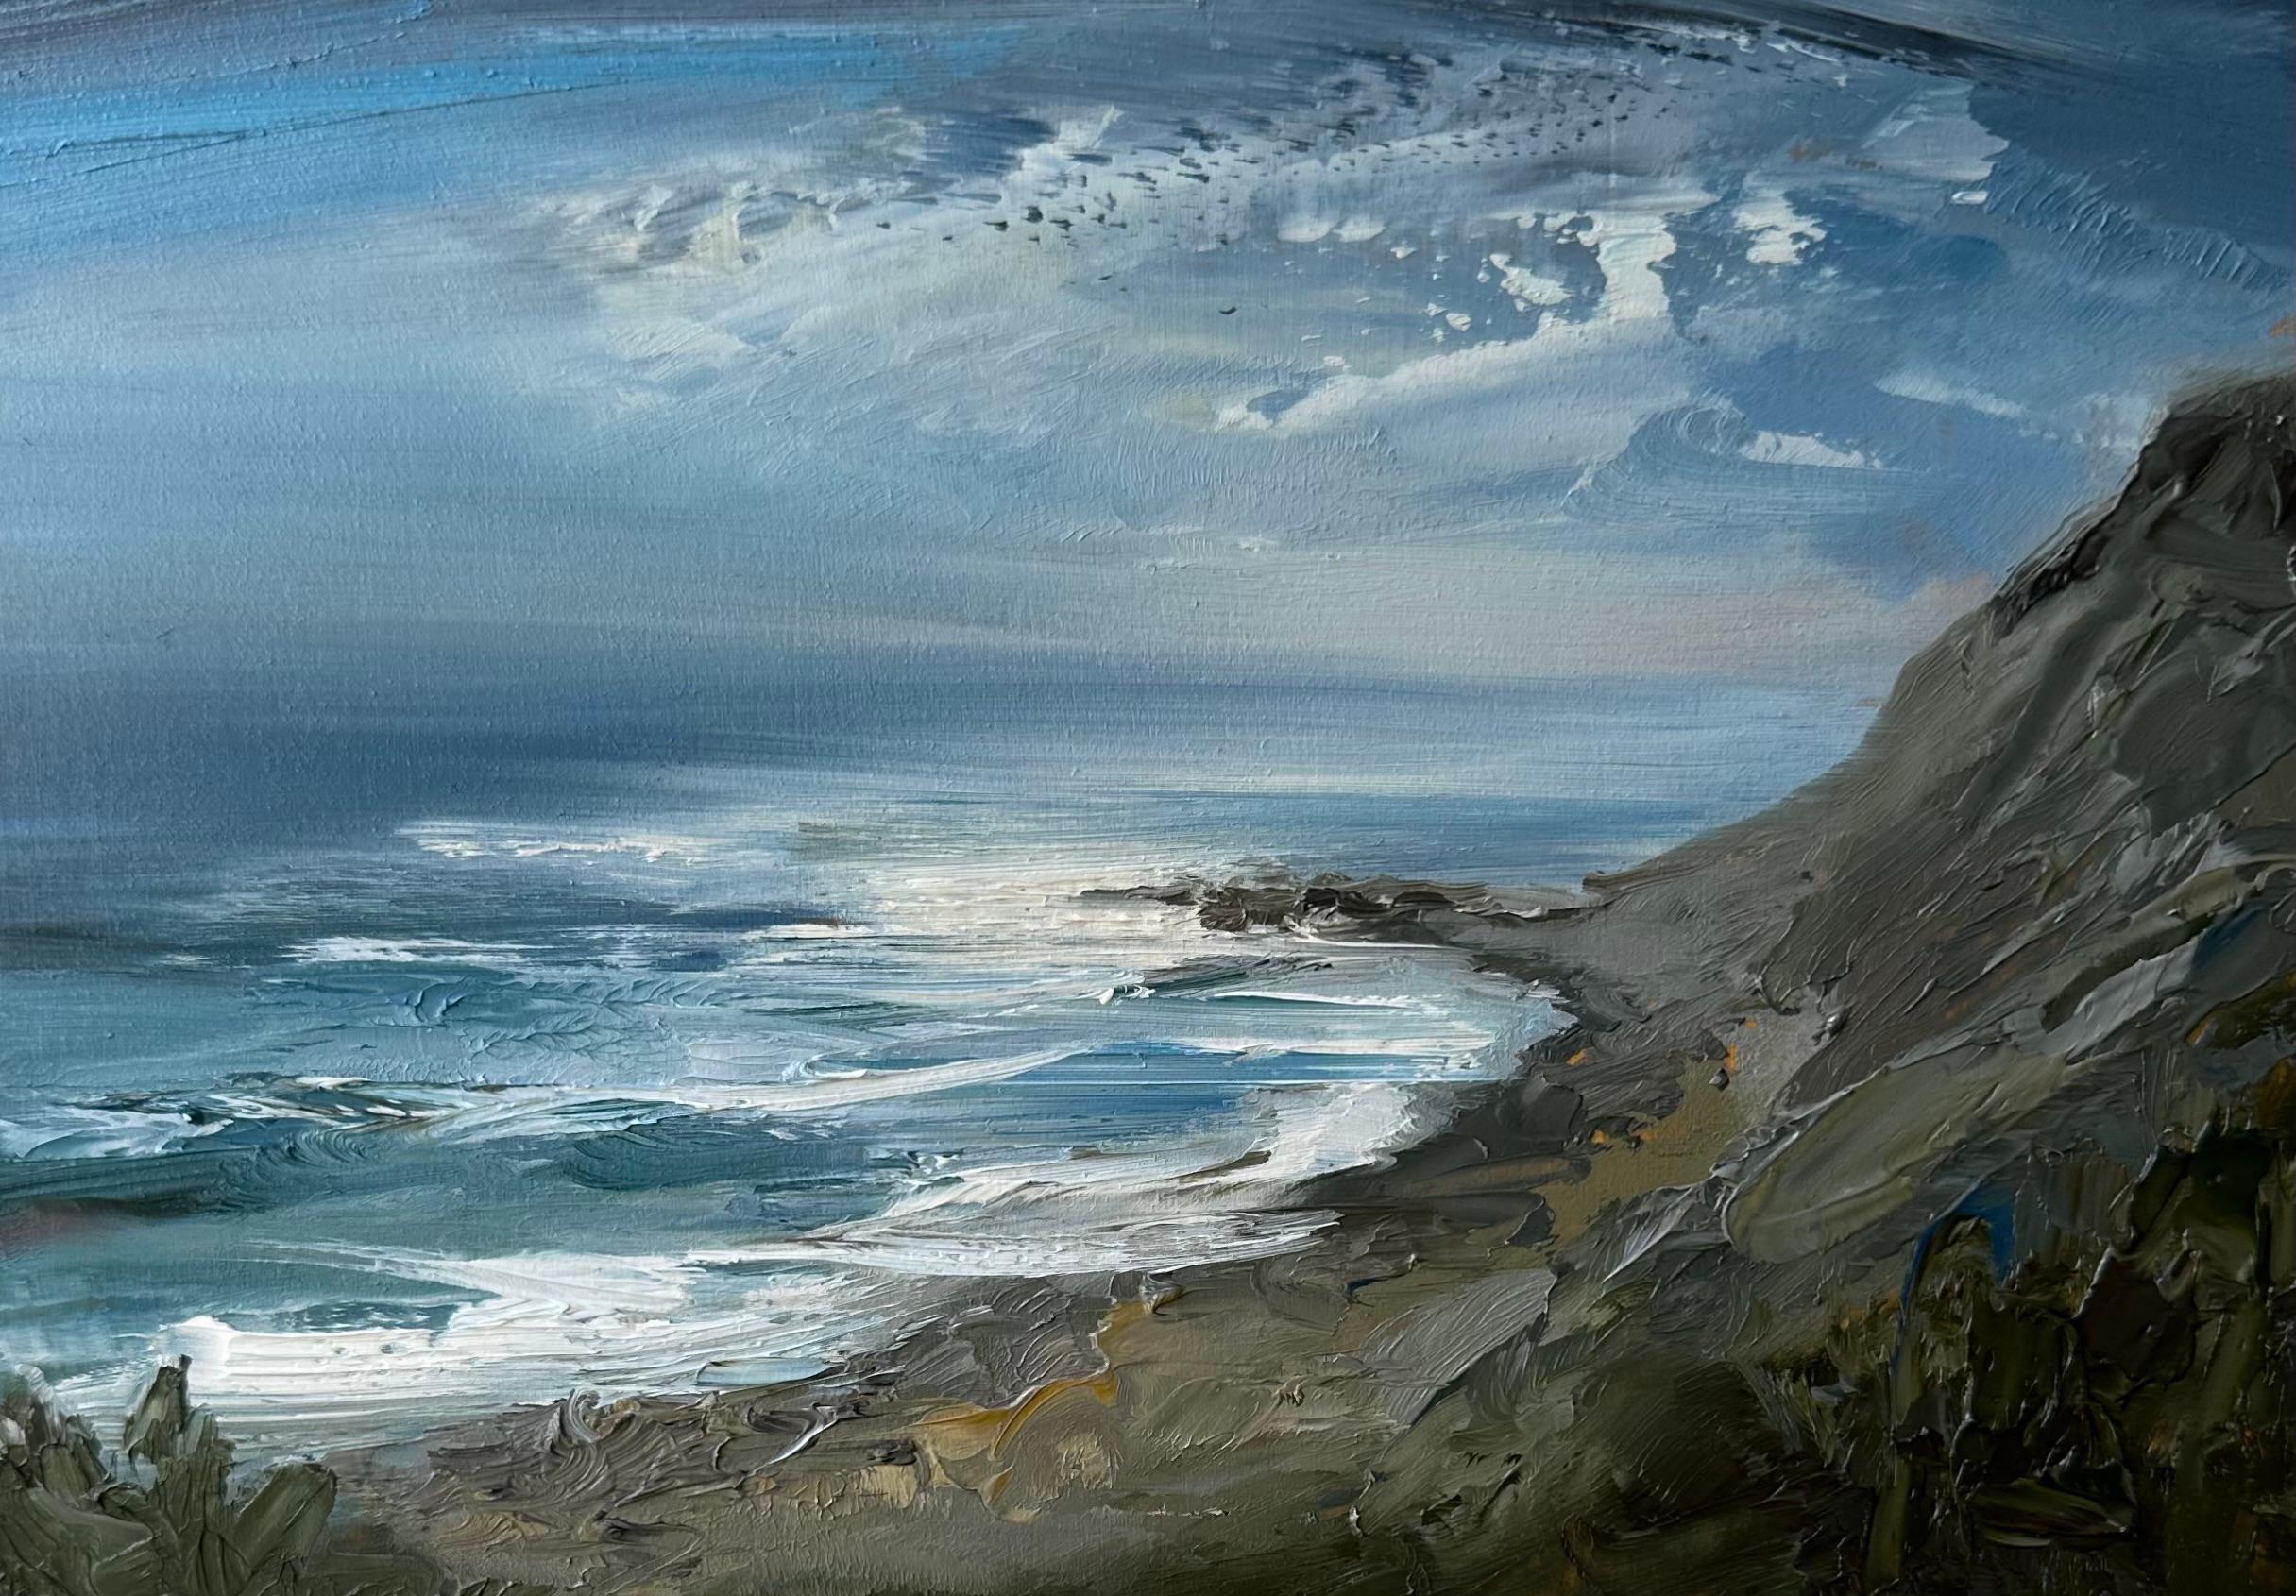 Whitney Knapp Landscape Painting – "Moonlit Bluff", ein Ölgemälde mit einer malerischen Küstenansicht